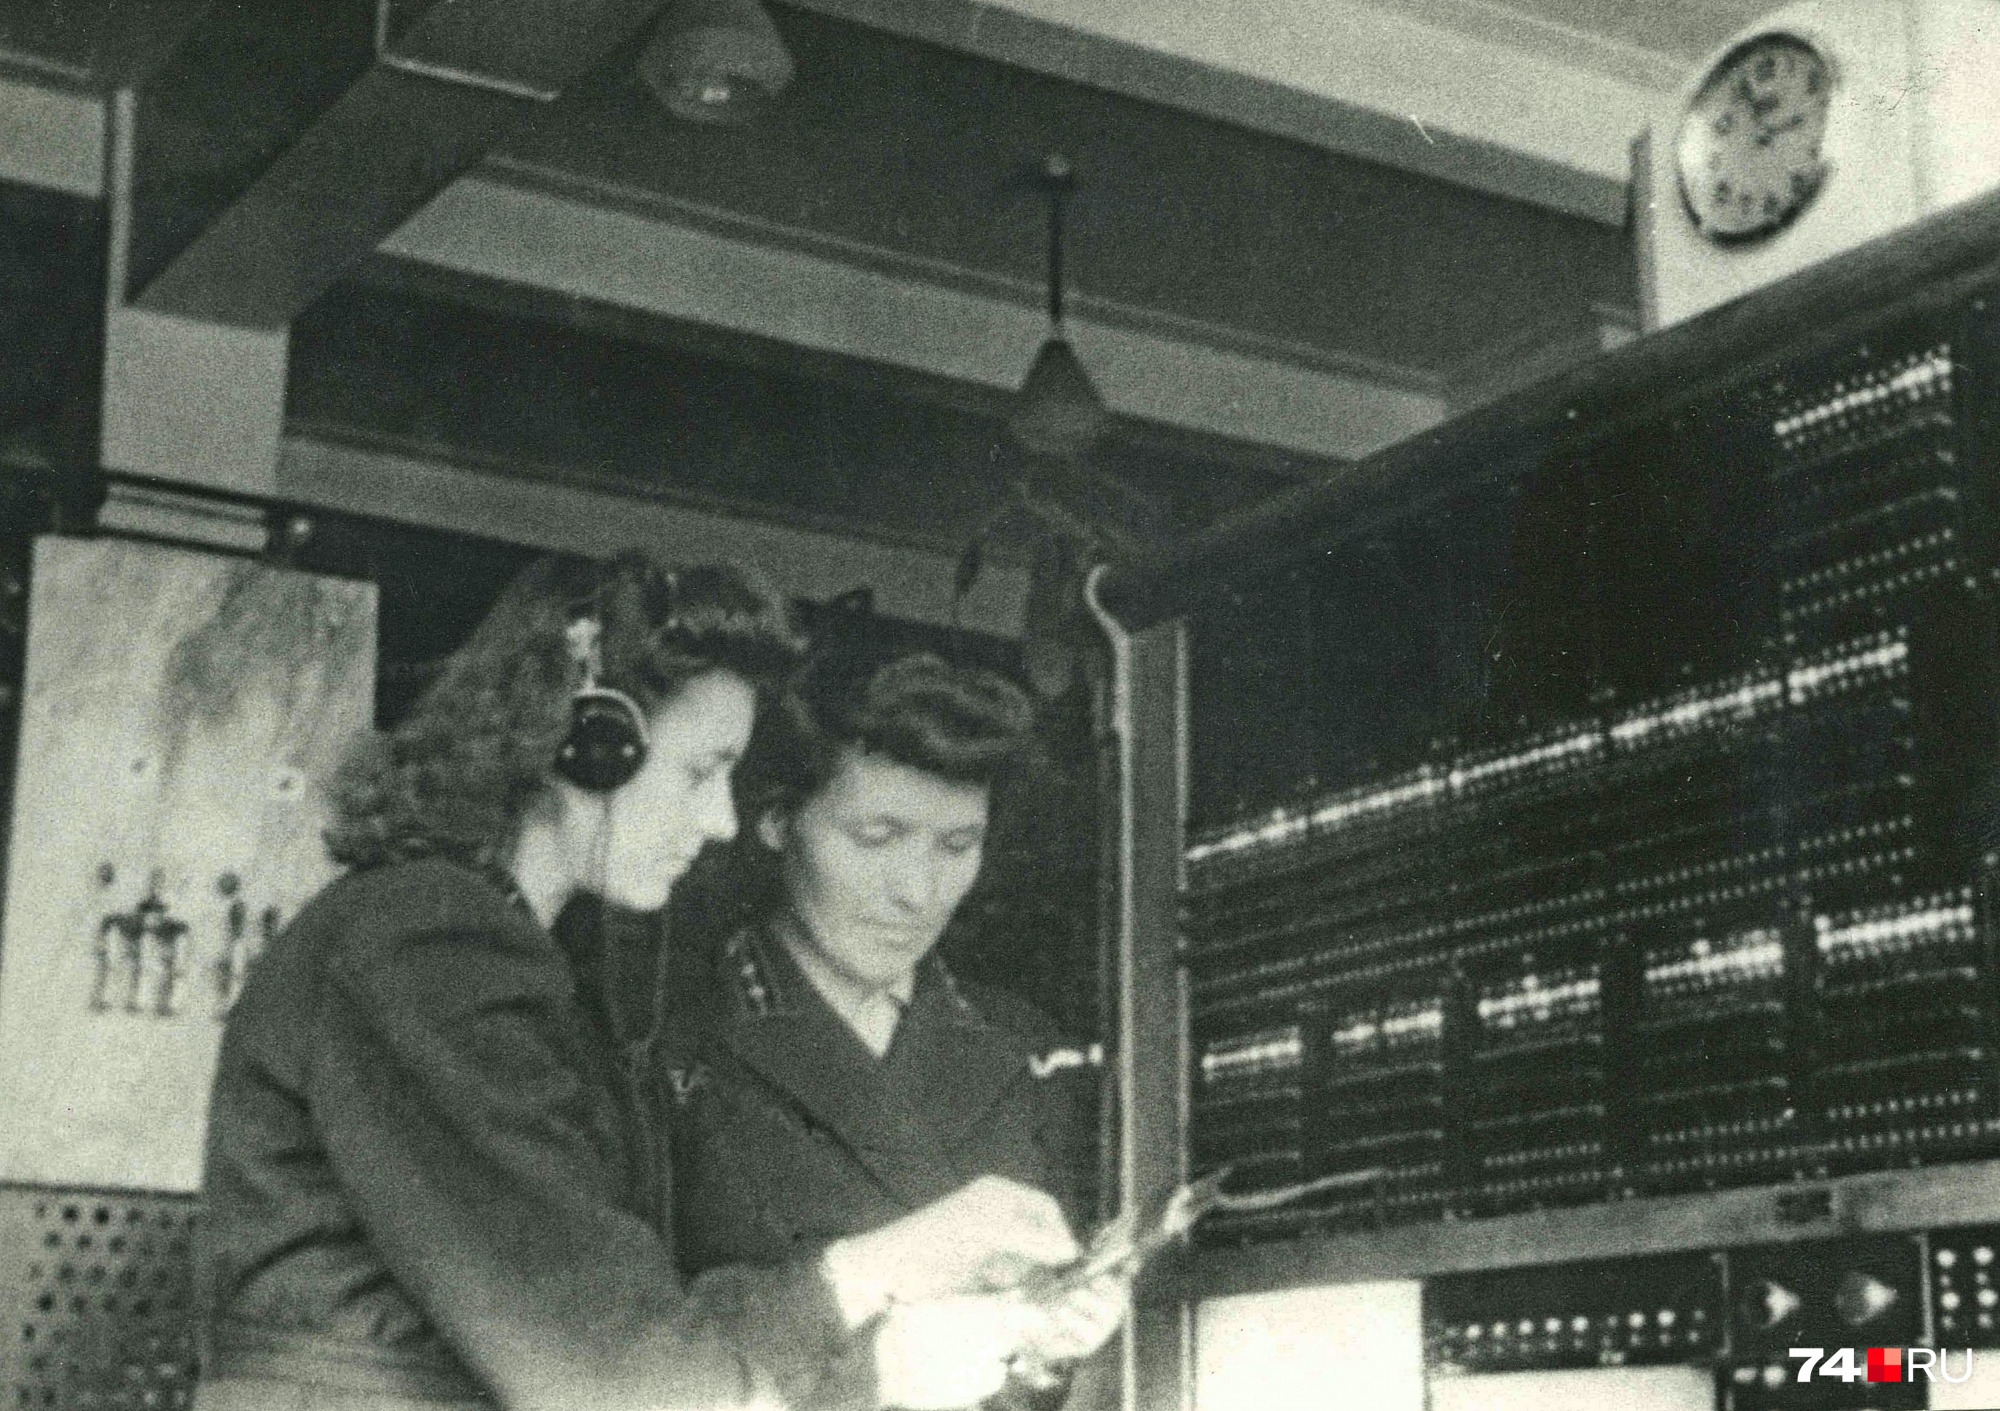 Все телефонистки были военнообязанными. На этом фото 1953 года инженеры Есина и Штин в форме за контрольным столом АТС машинной системы